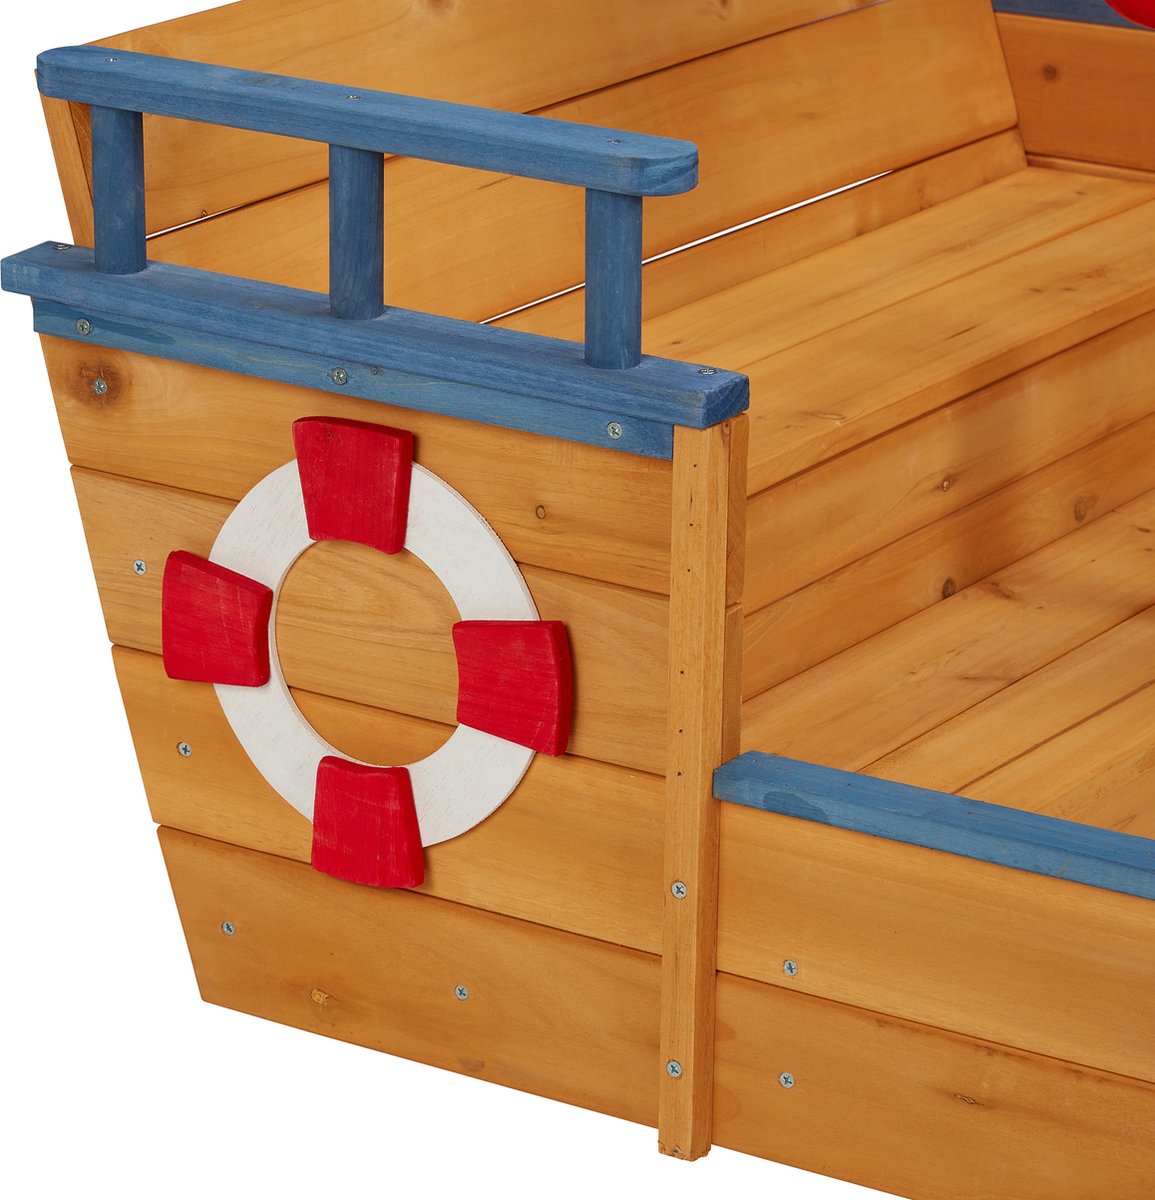 Bac à sable bateau en bois pour enfants 179x121x120cm SOULET